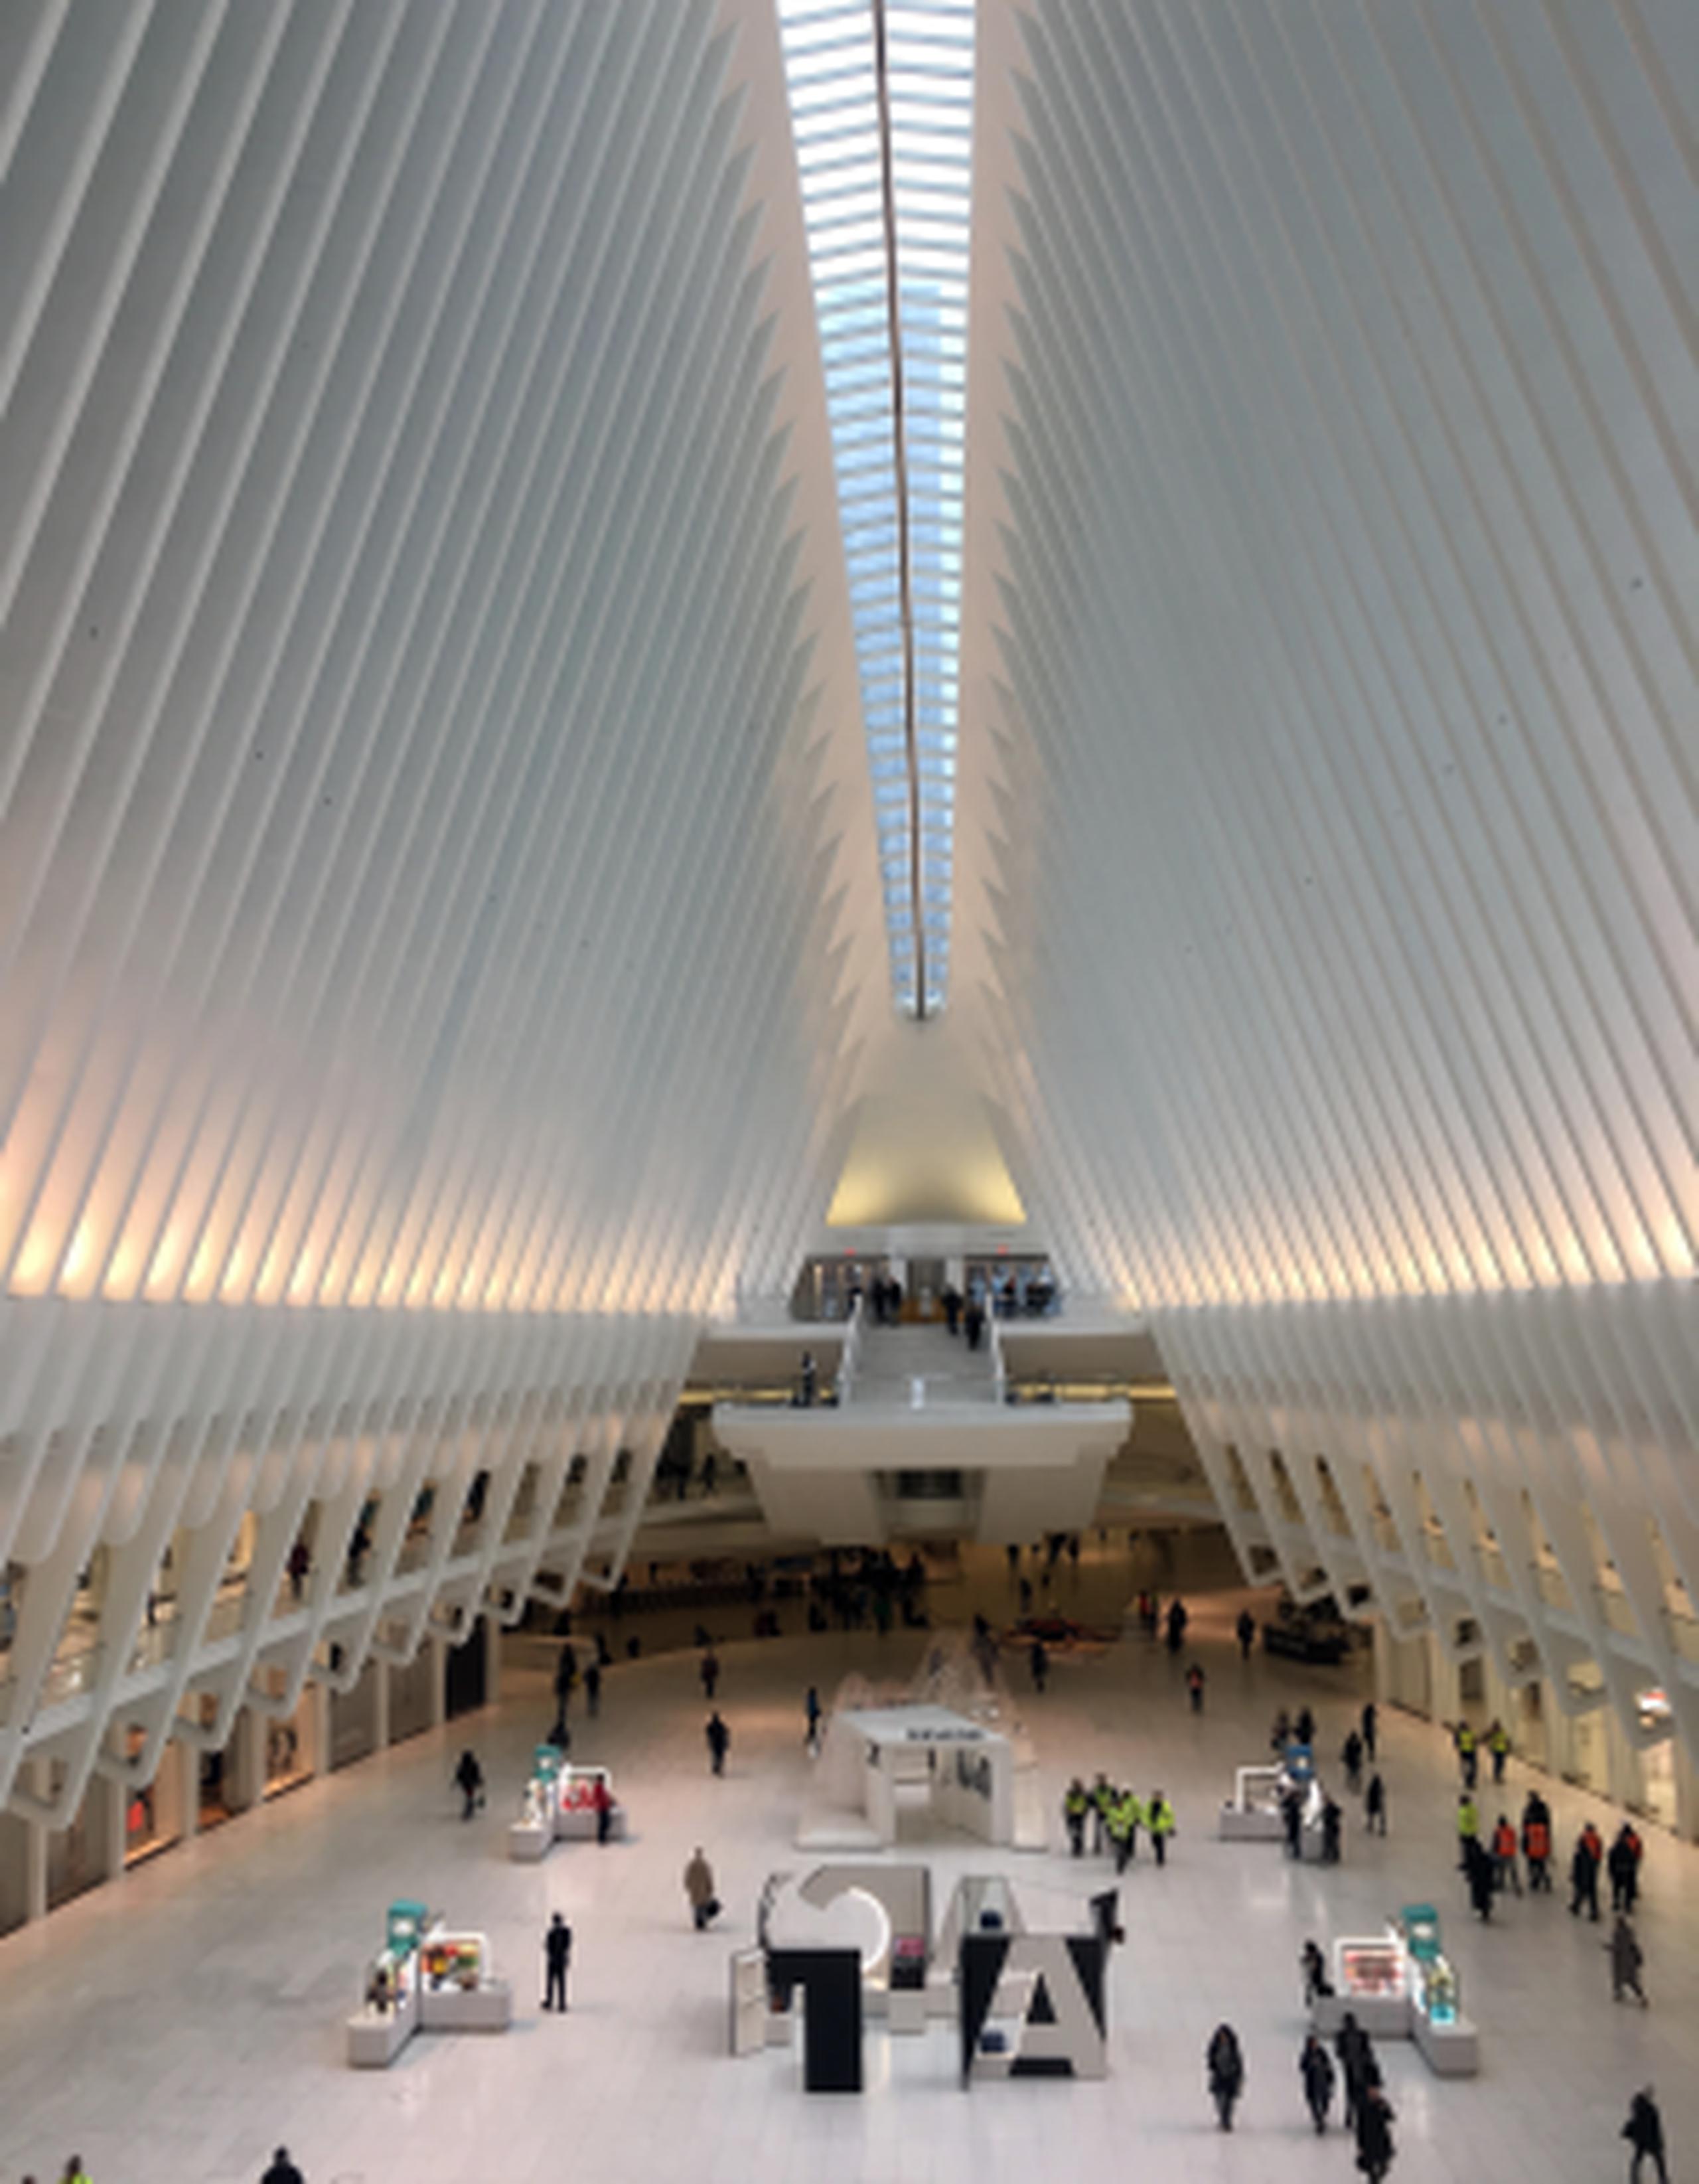 La mujer cayó al piso de la sala principal de la estructura del arquitecto Santiago Calatrava, llamada Oculus. (AP / Donald King)